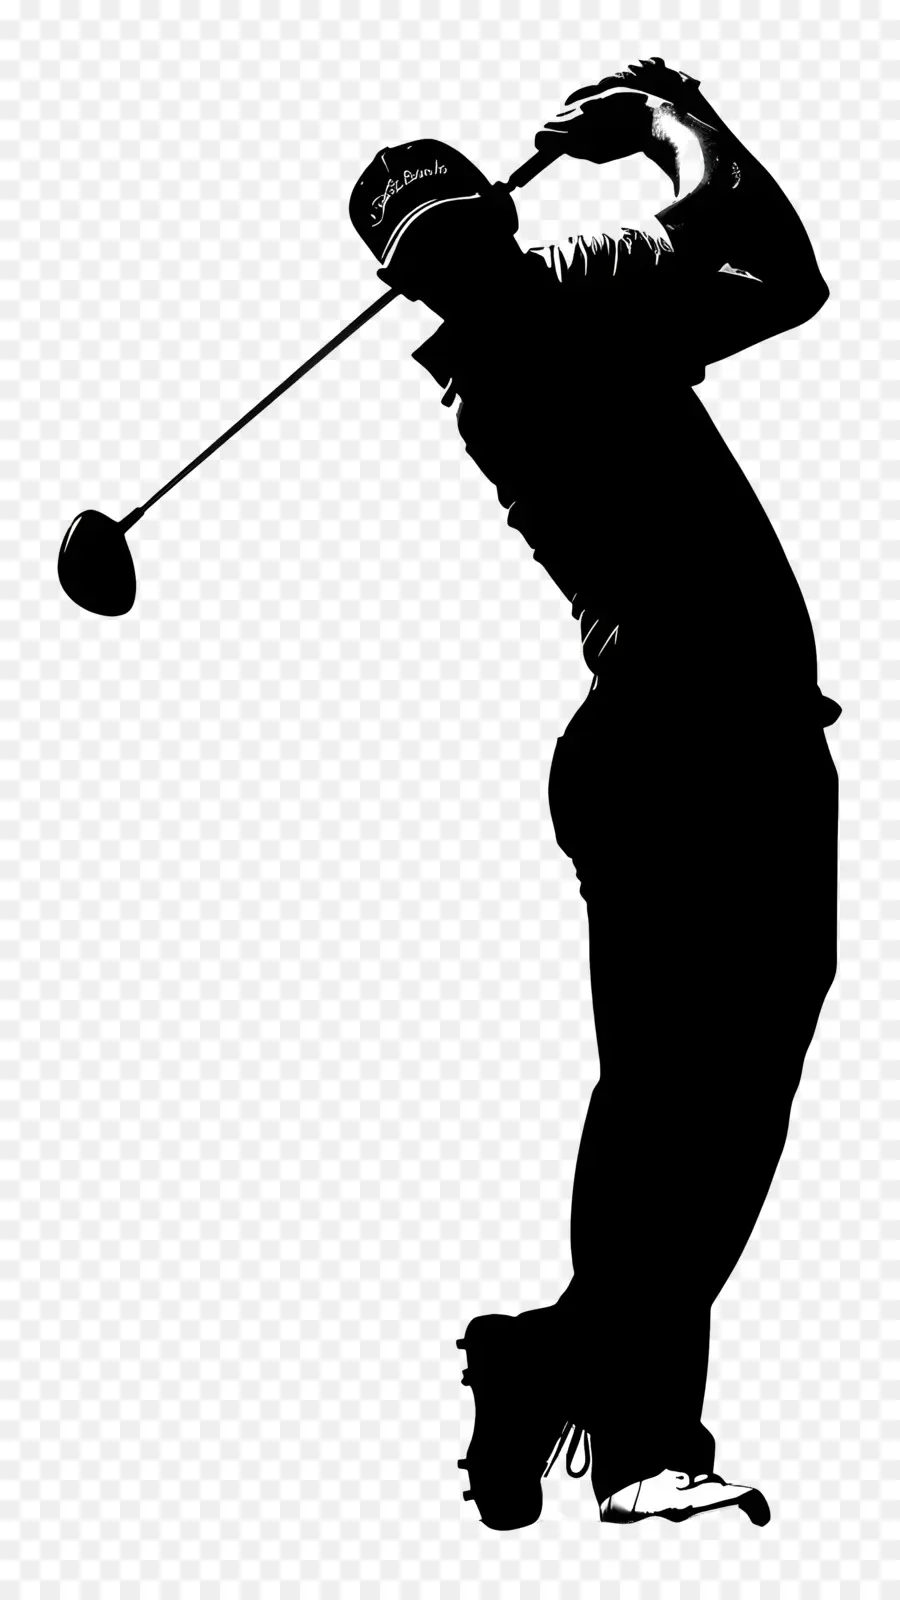 Golf Man Silhouette Golf Man Swing Club - Man Swinging Golf Club in immagine monocromatica